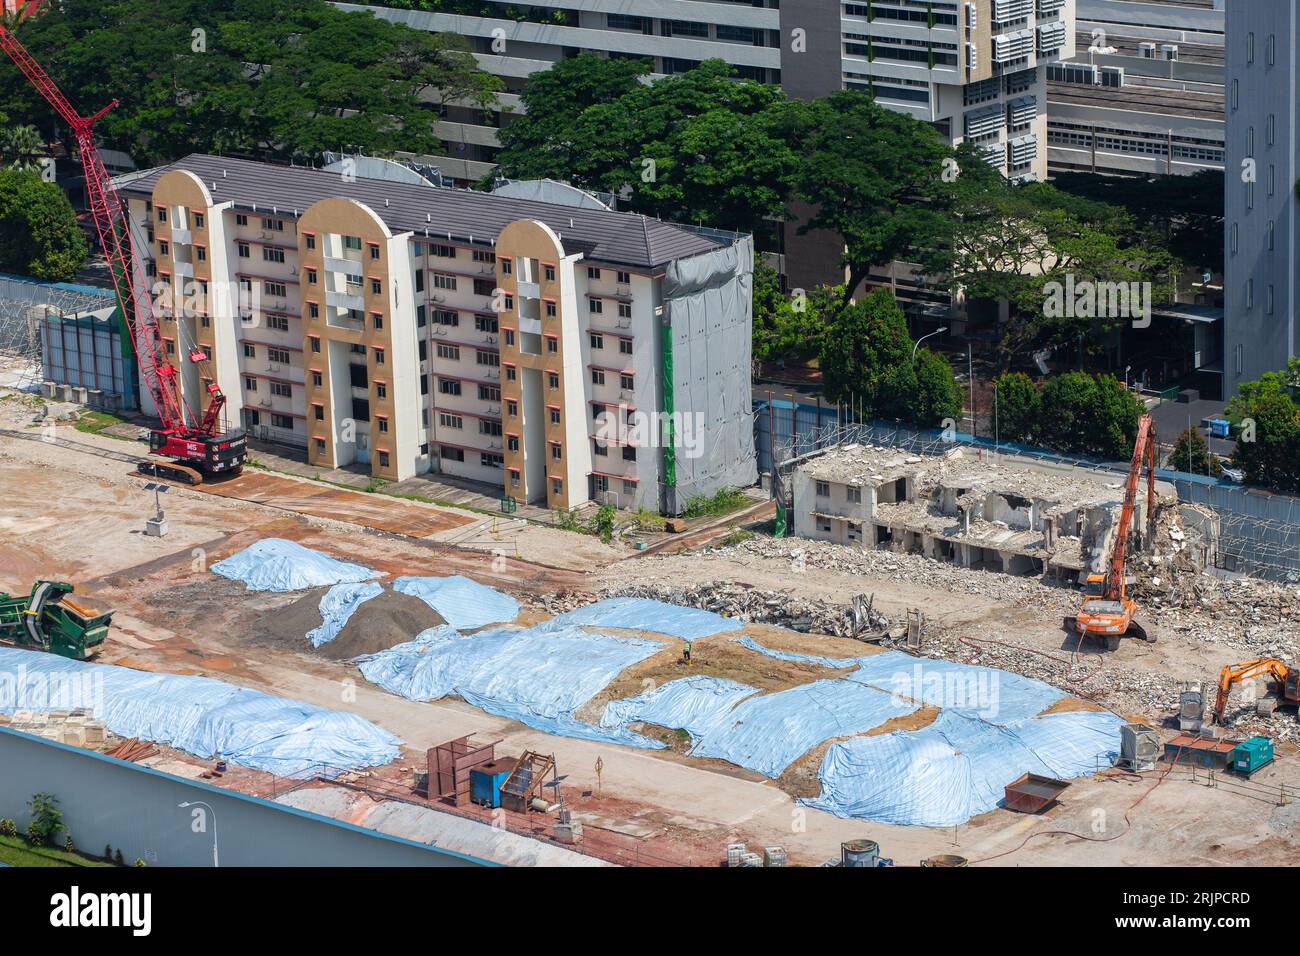 Vista aerea di una demolizione di vecchi appartamenti a Redhill, nuova pianificazione urbana in corso per soddisfare la domanda di alloggi a Singapore. Foto Stock